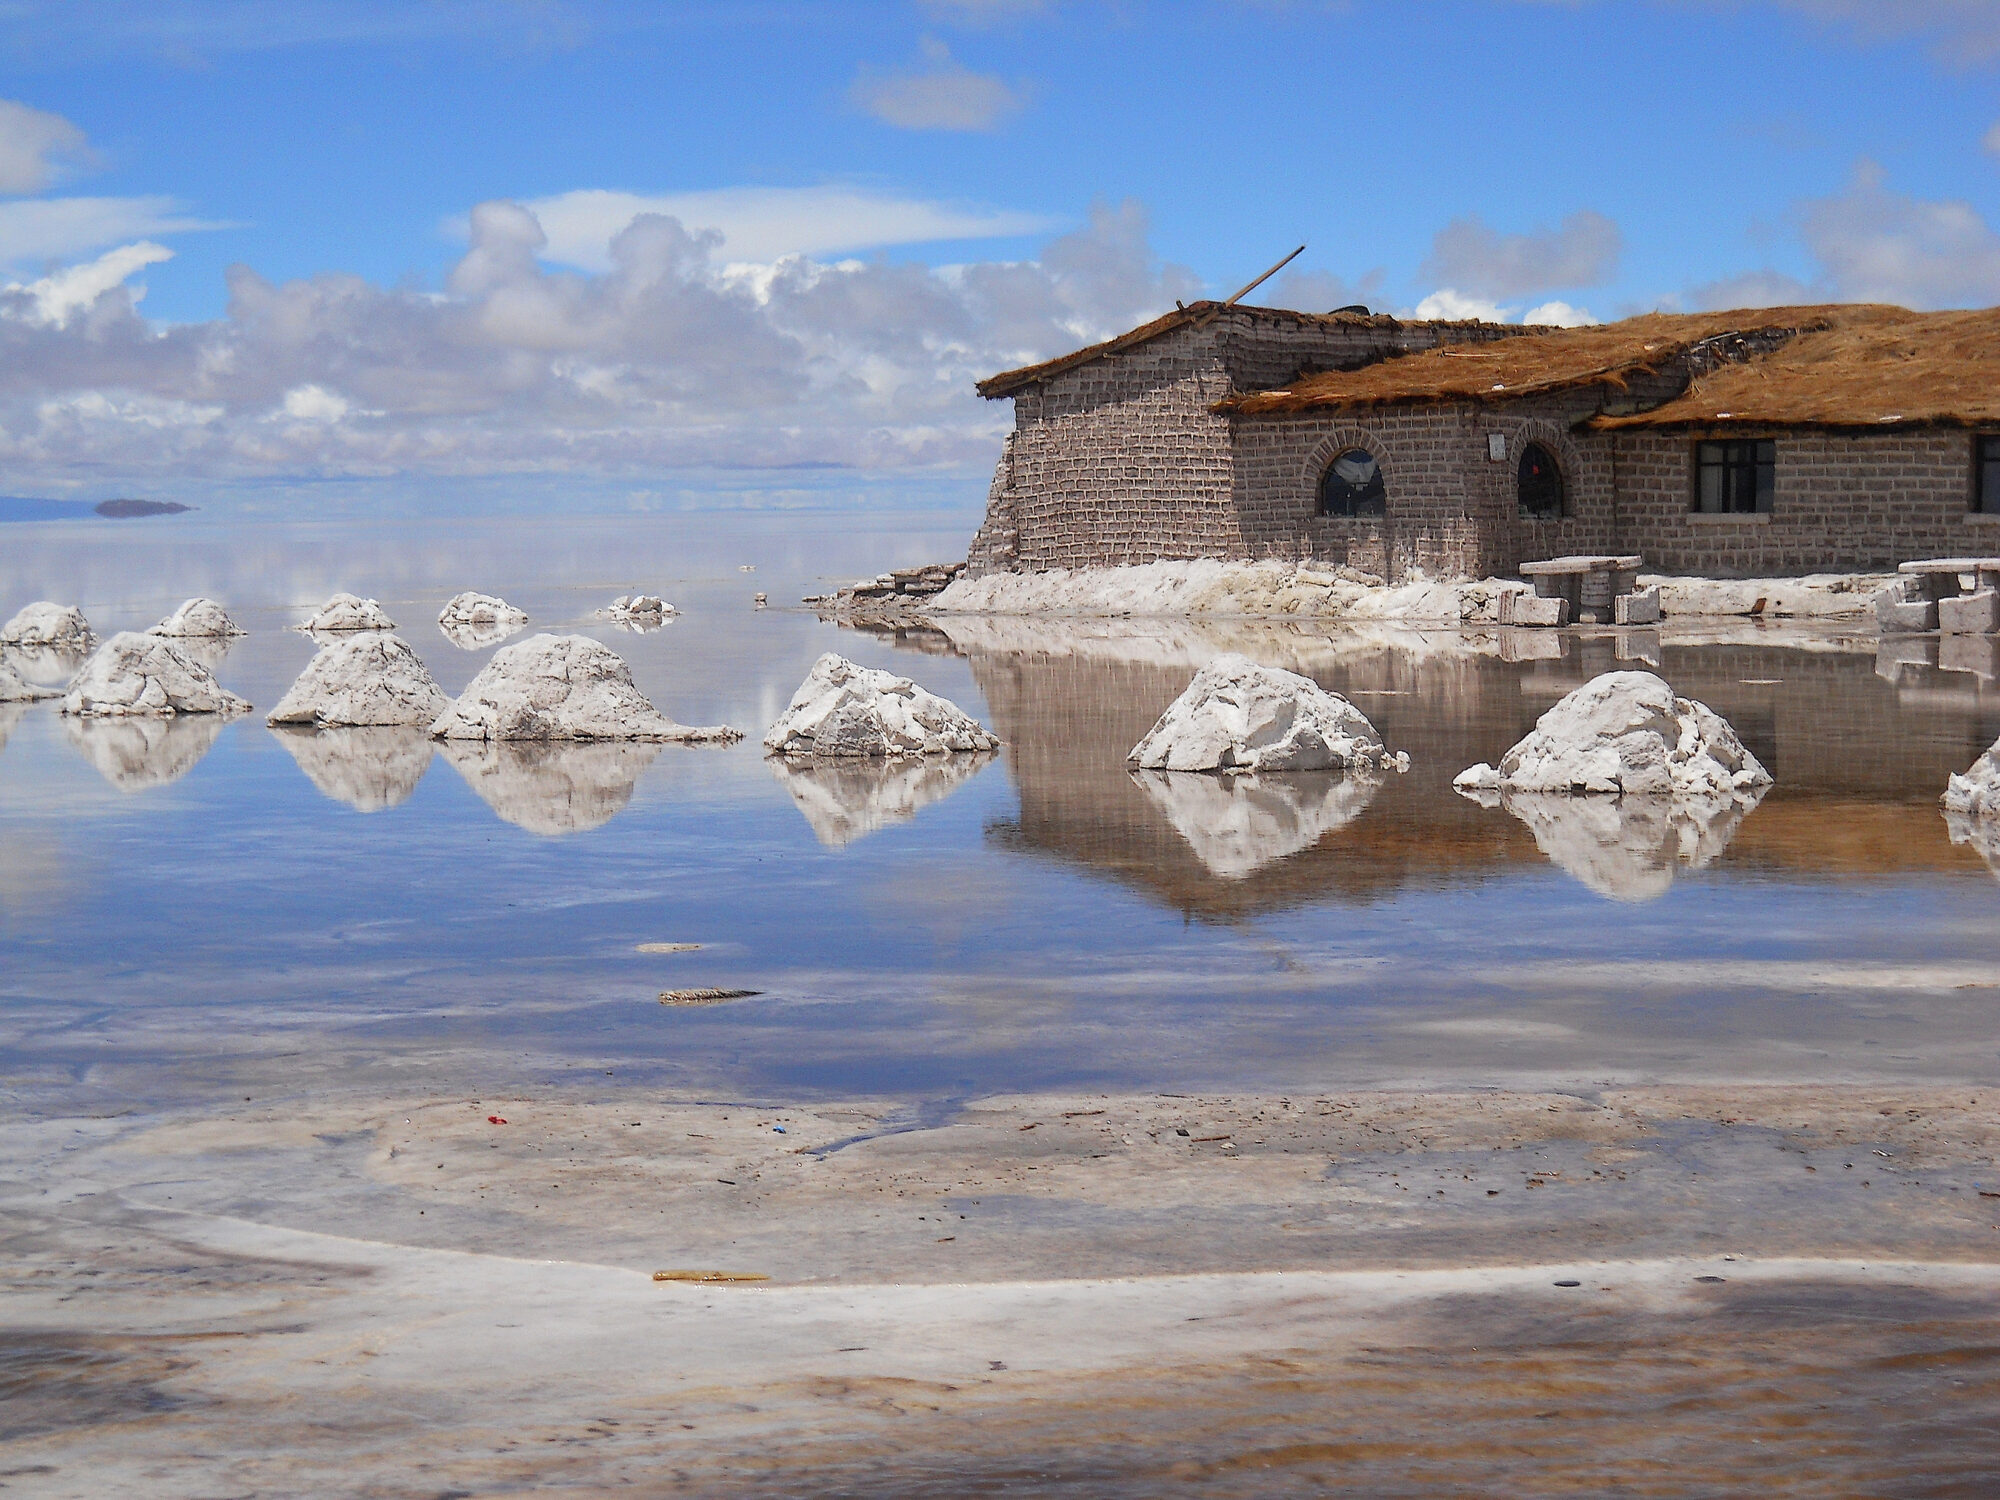 Evaporation pools in Salar de Uyuni, Bolivia.